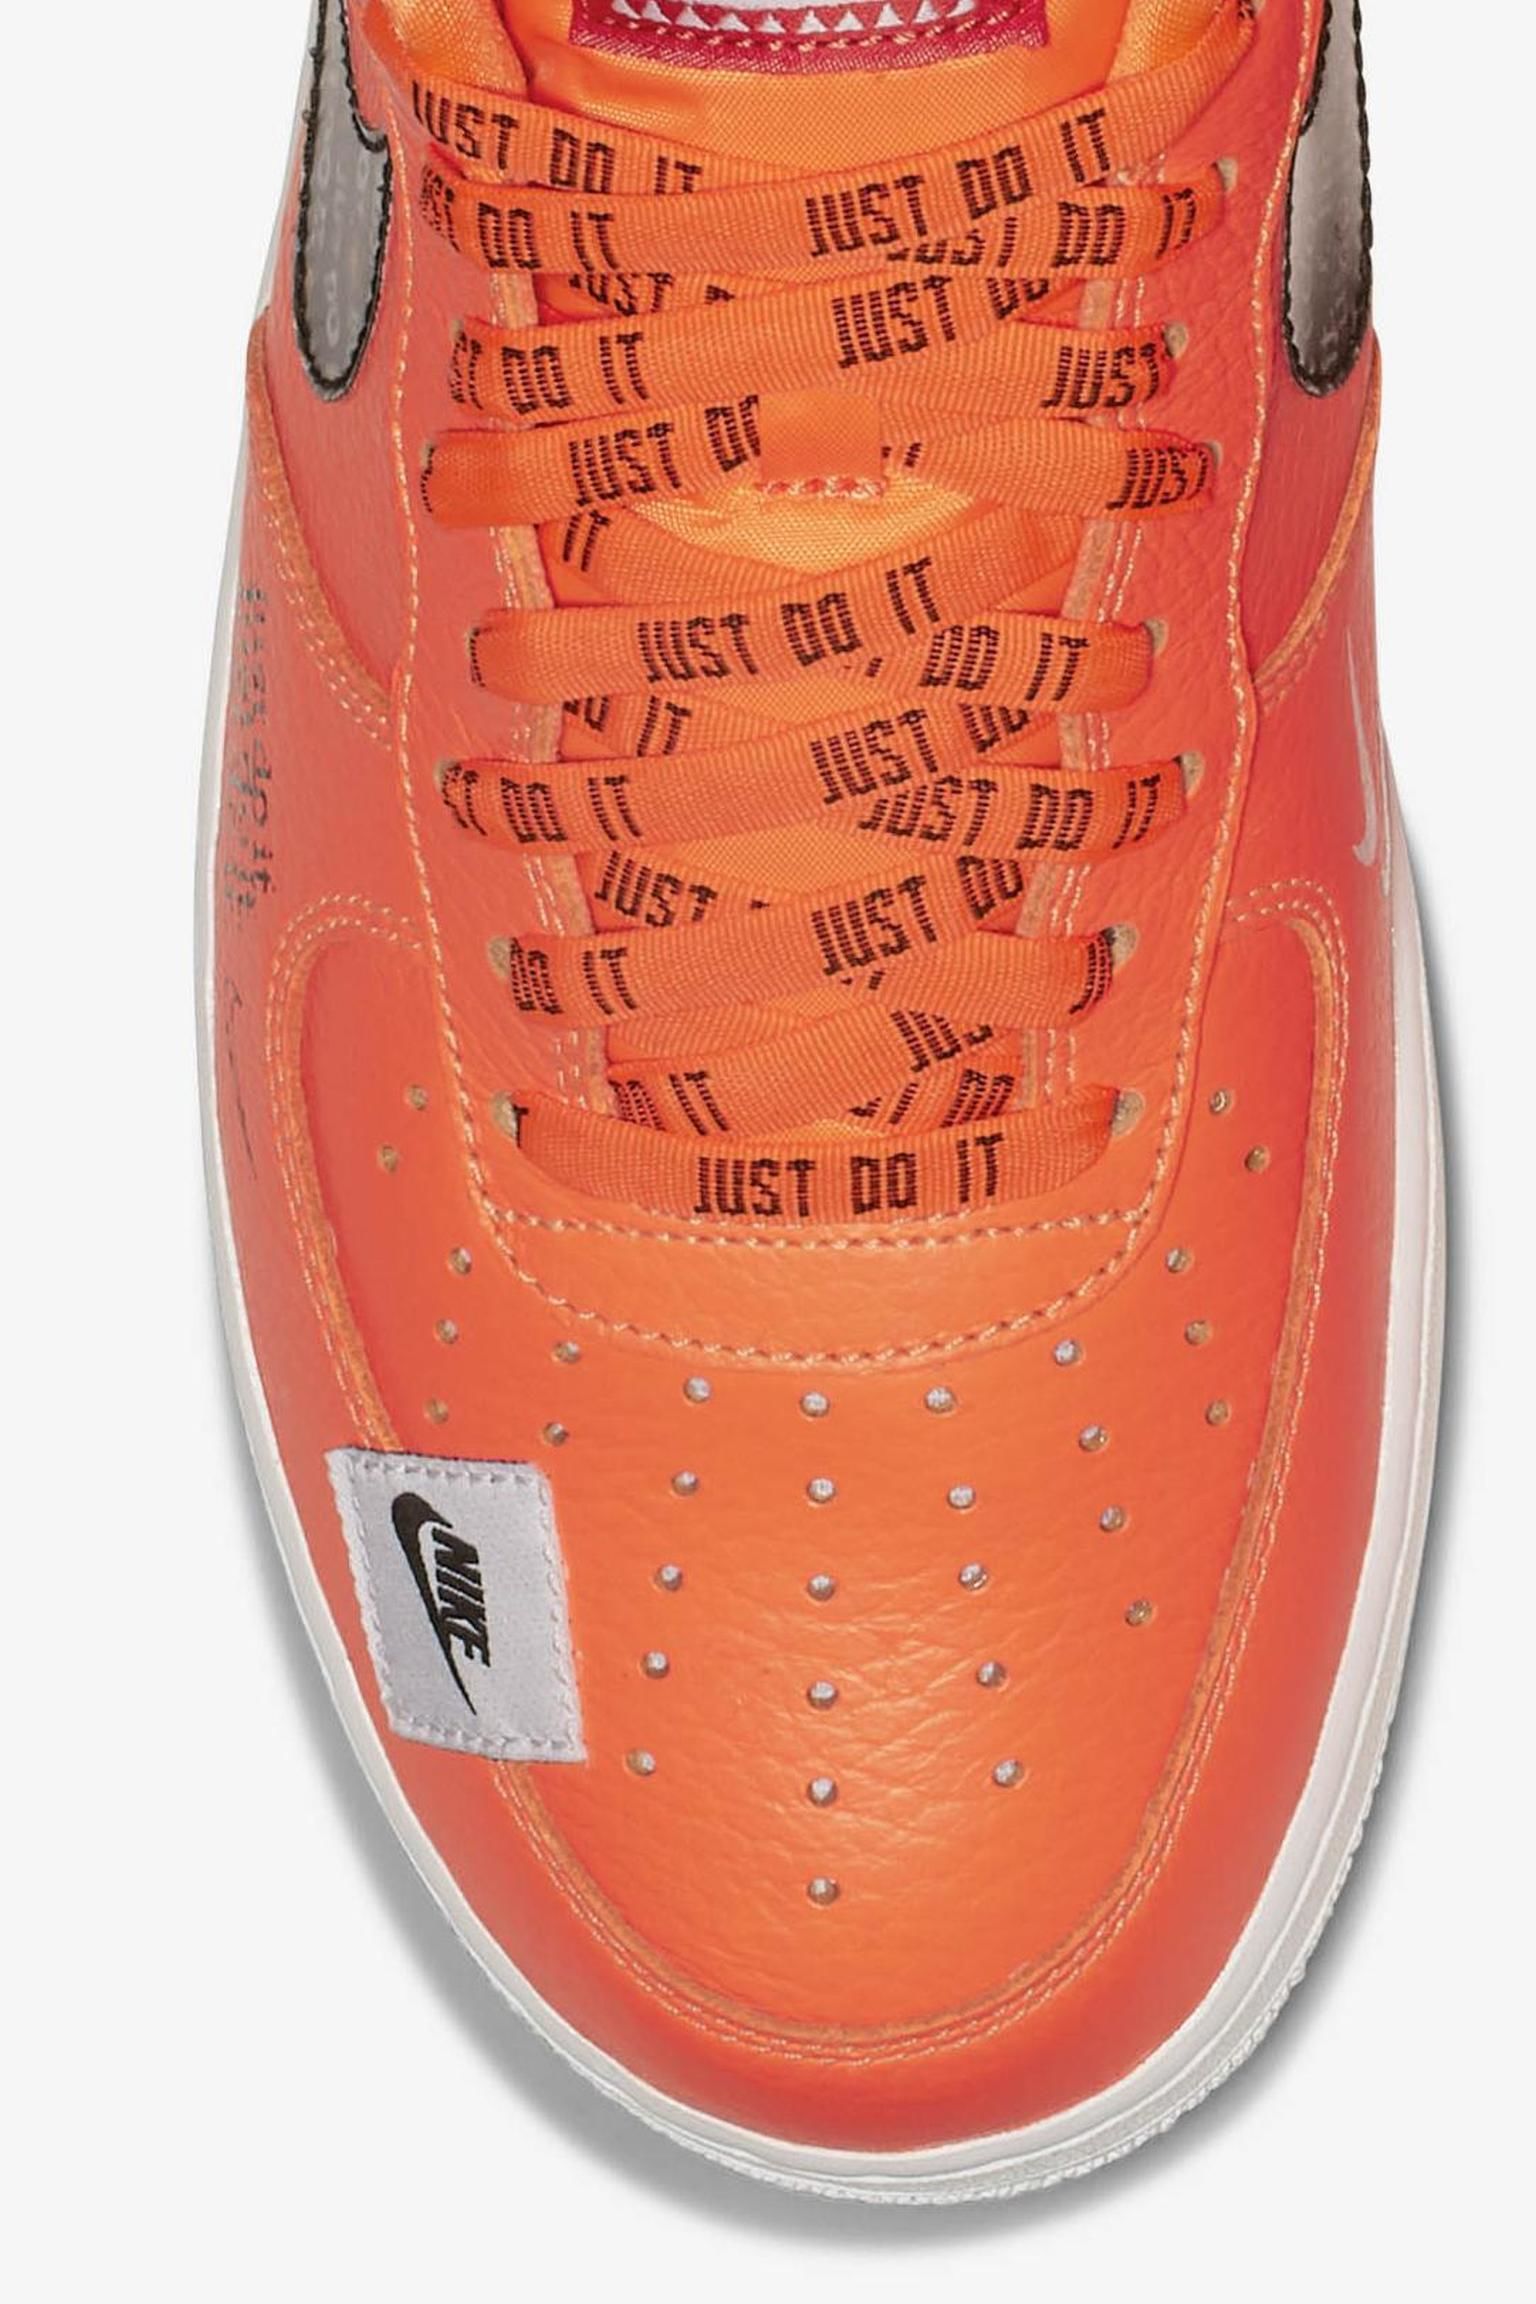 just do it orange nike shoes